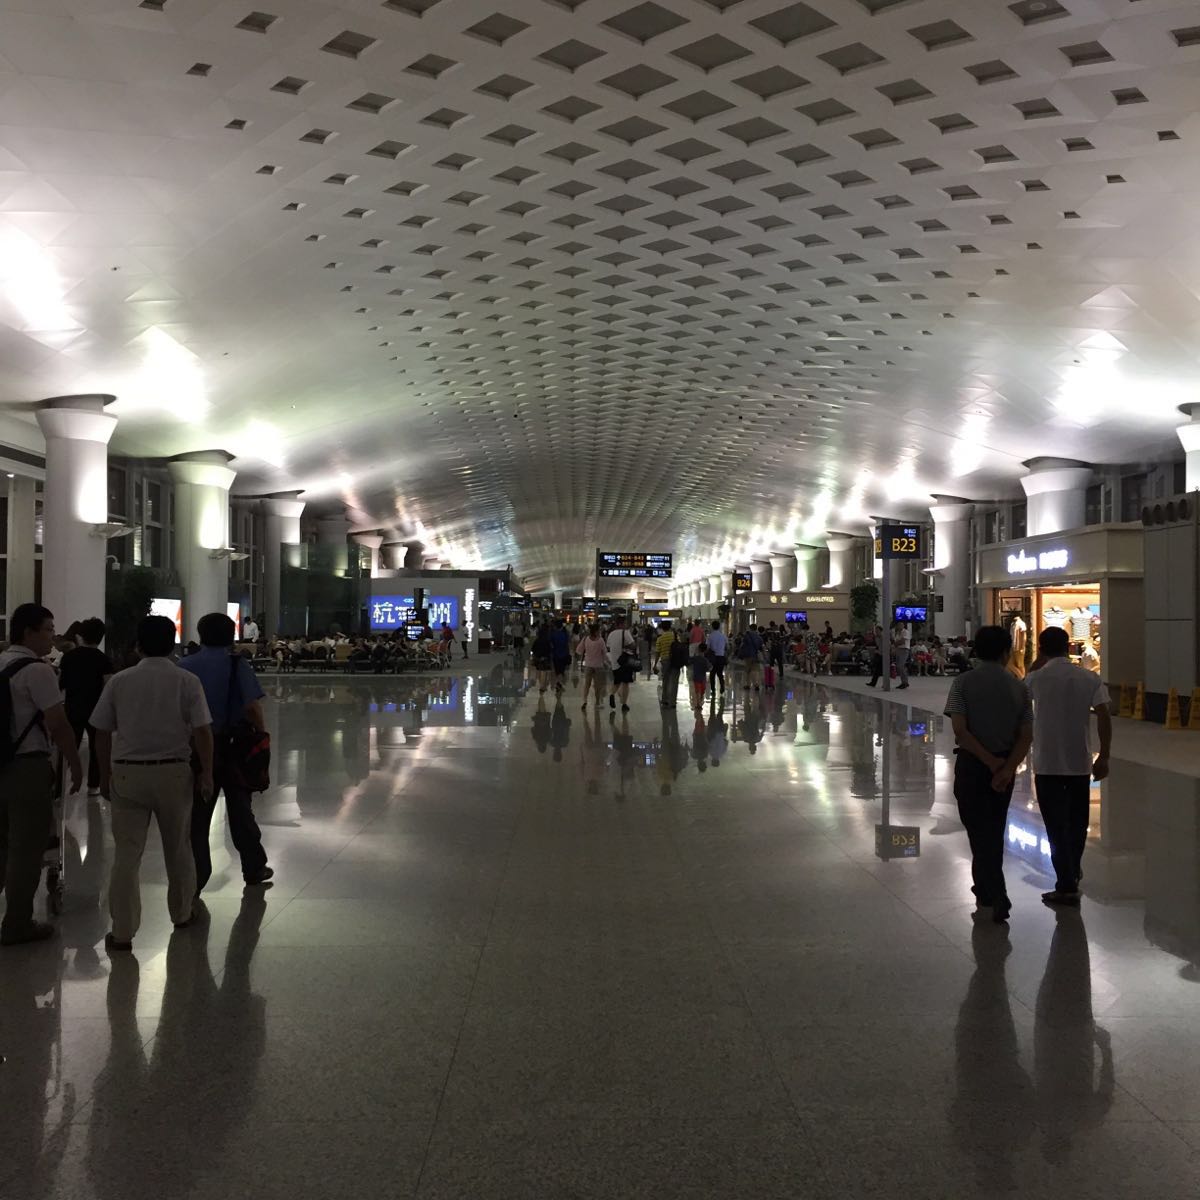 萧山机场是一个国际机场,无论是他的外观还是内部的管理非常到位